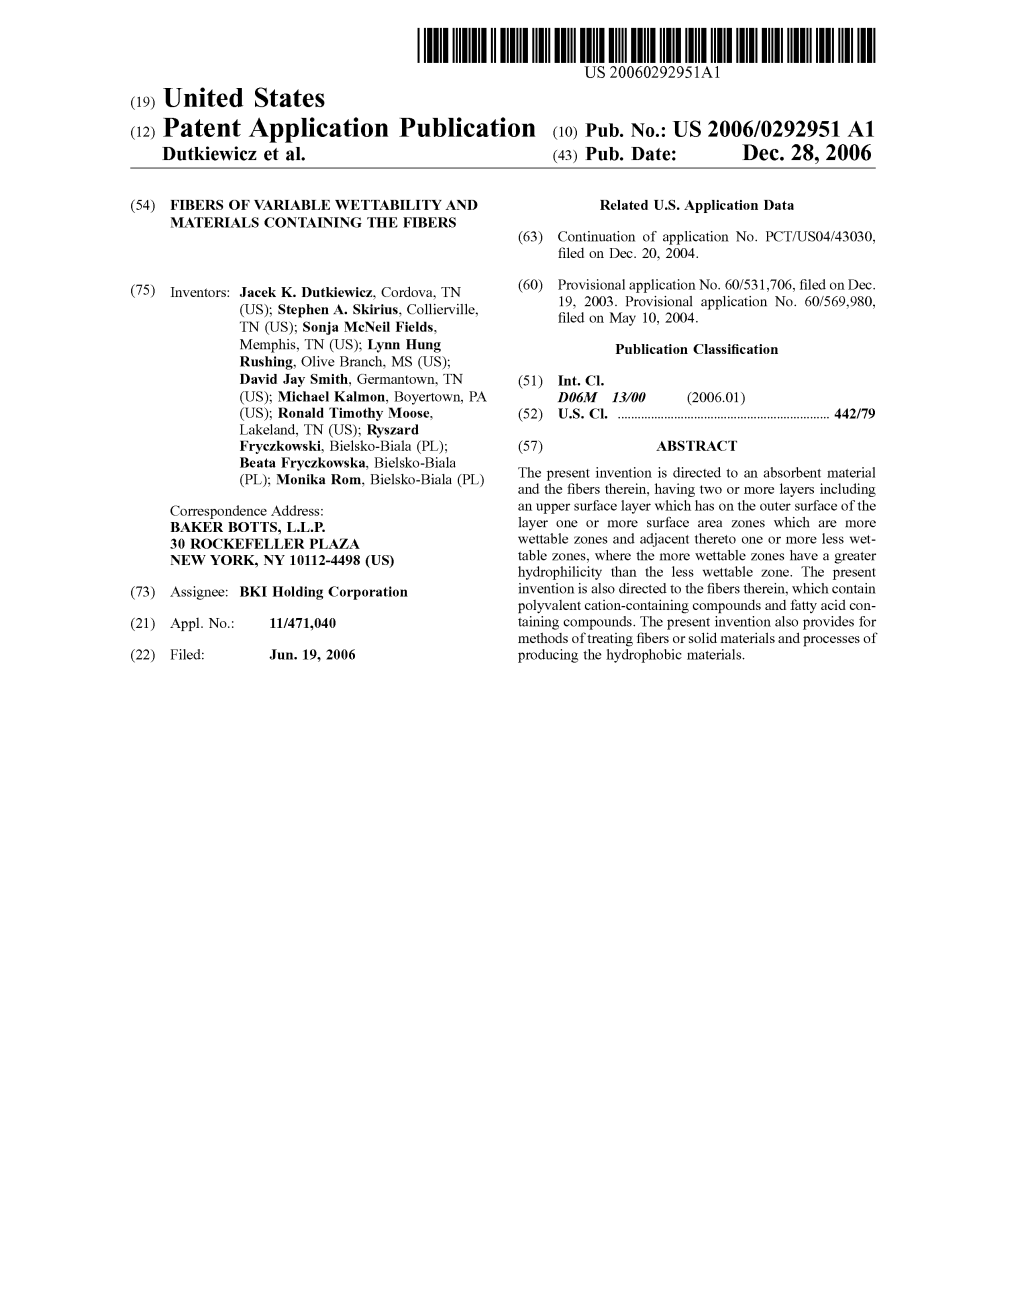 (12) Patent Application Publication (10) Pub. No.: US 2006/0292951 A1 Dutkiewicz Et Al